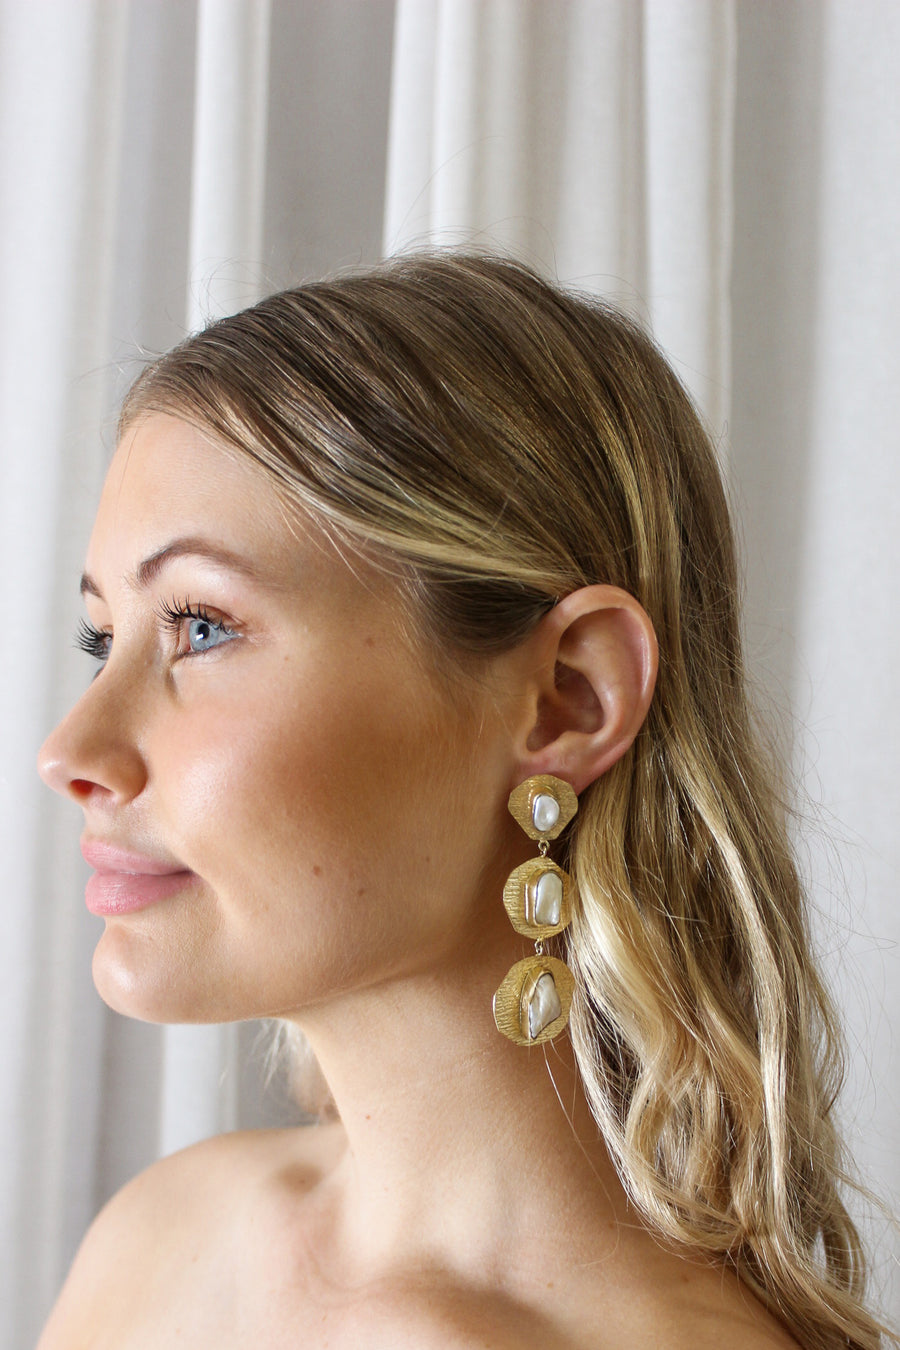 Gold pearl drop earrings